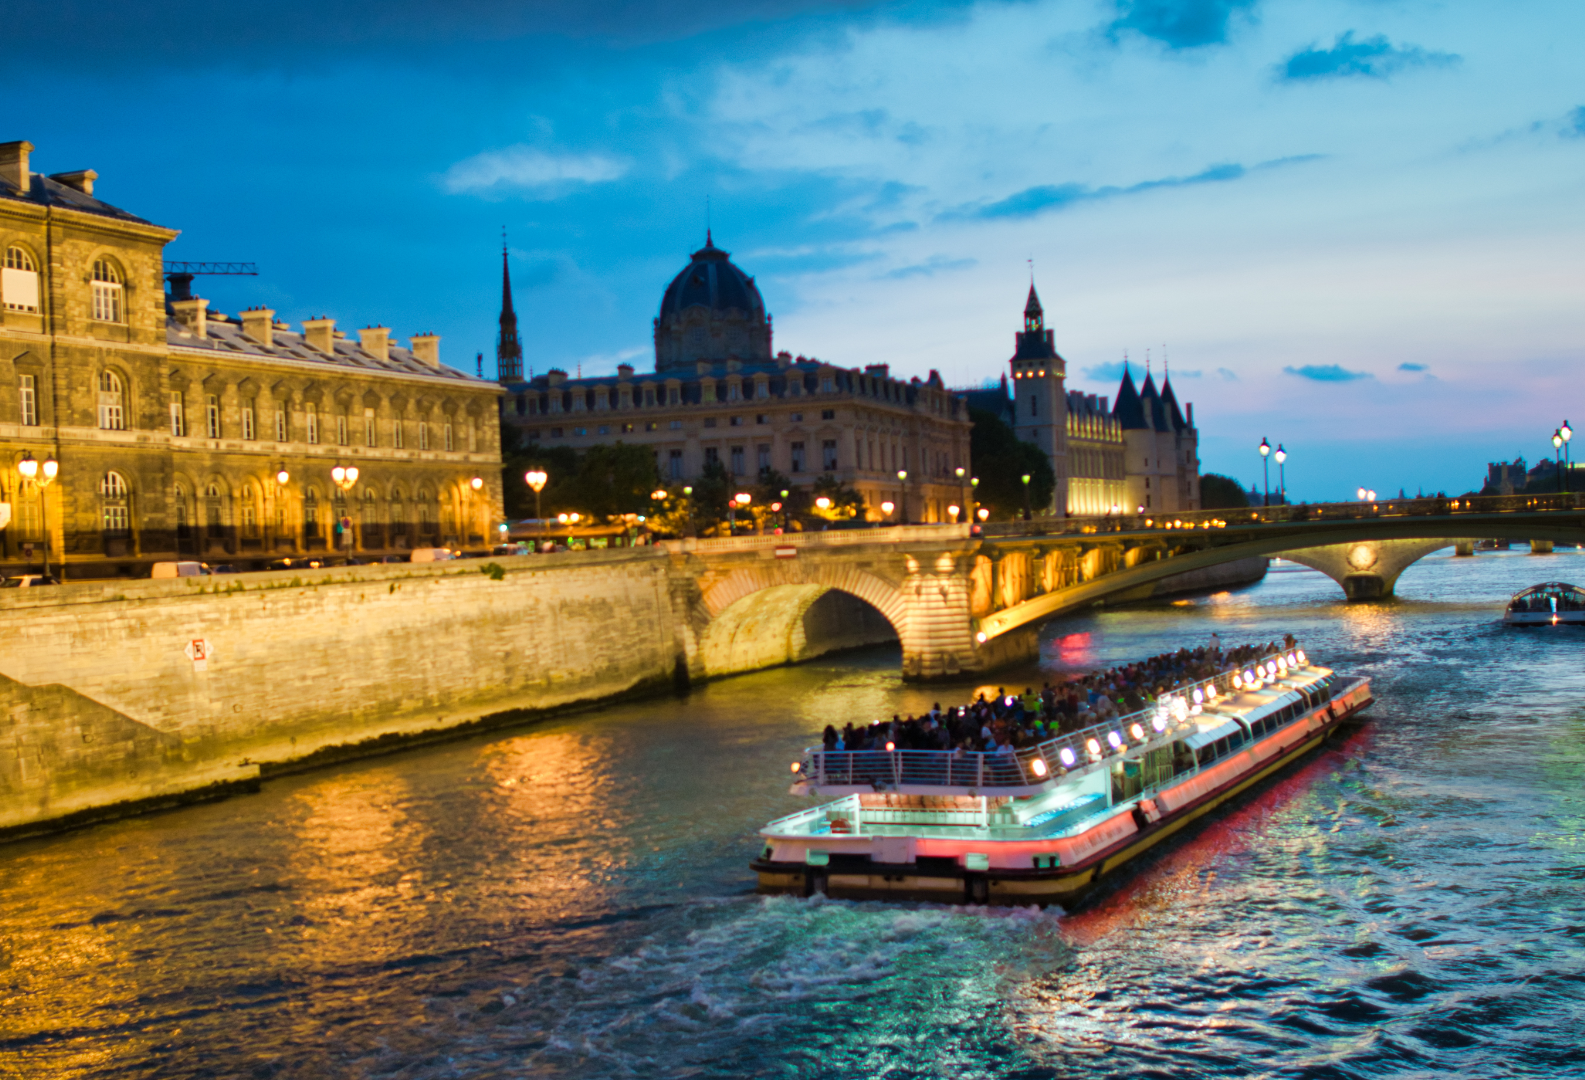 The Seine River Cruise in Paris.